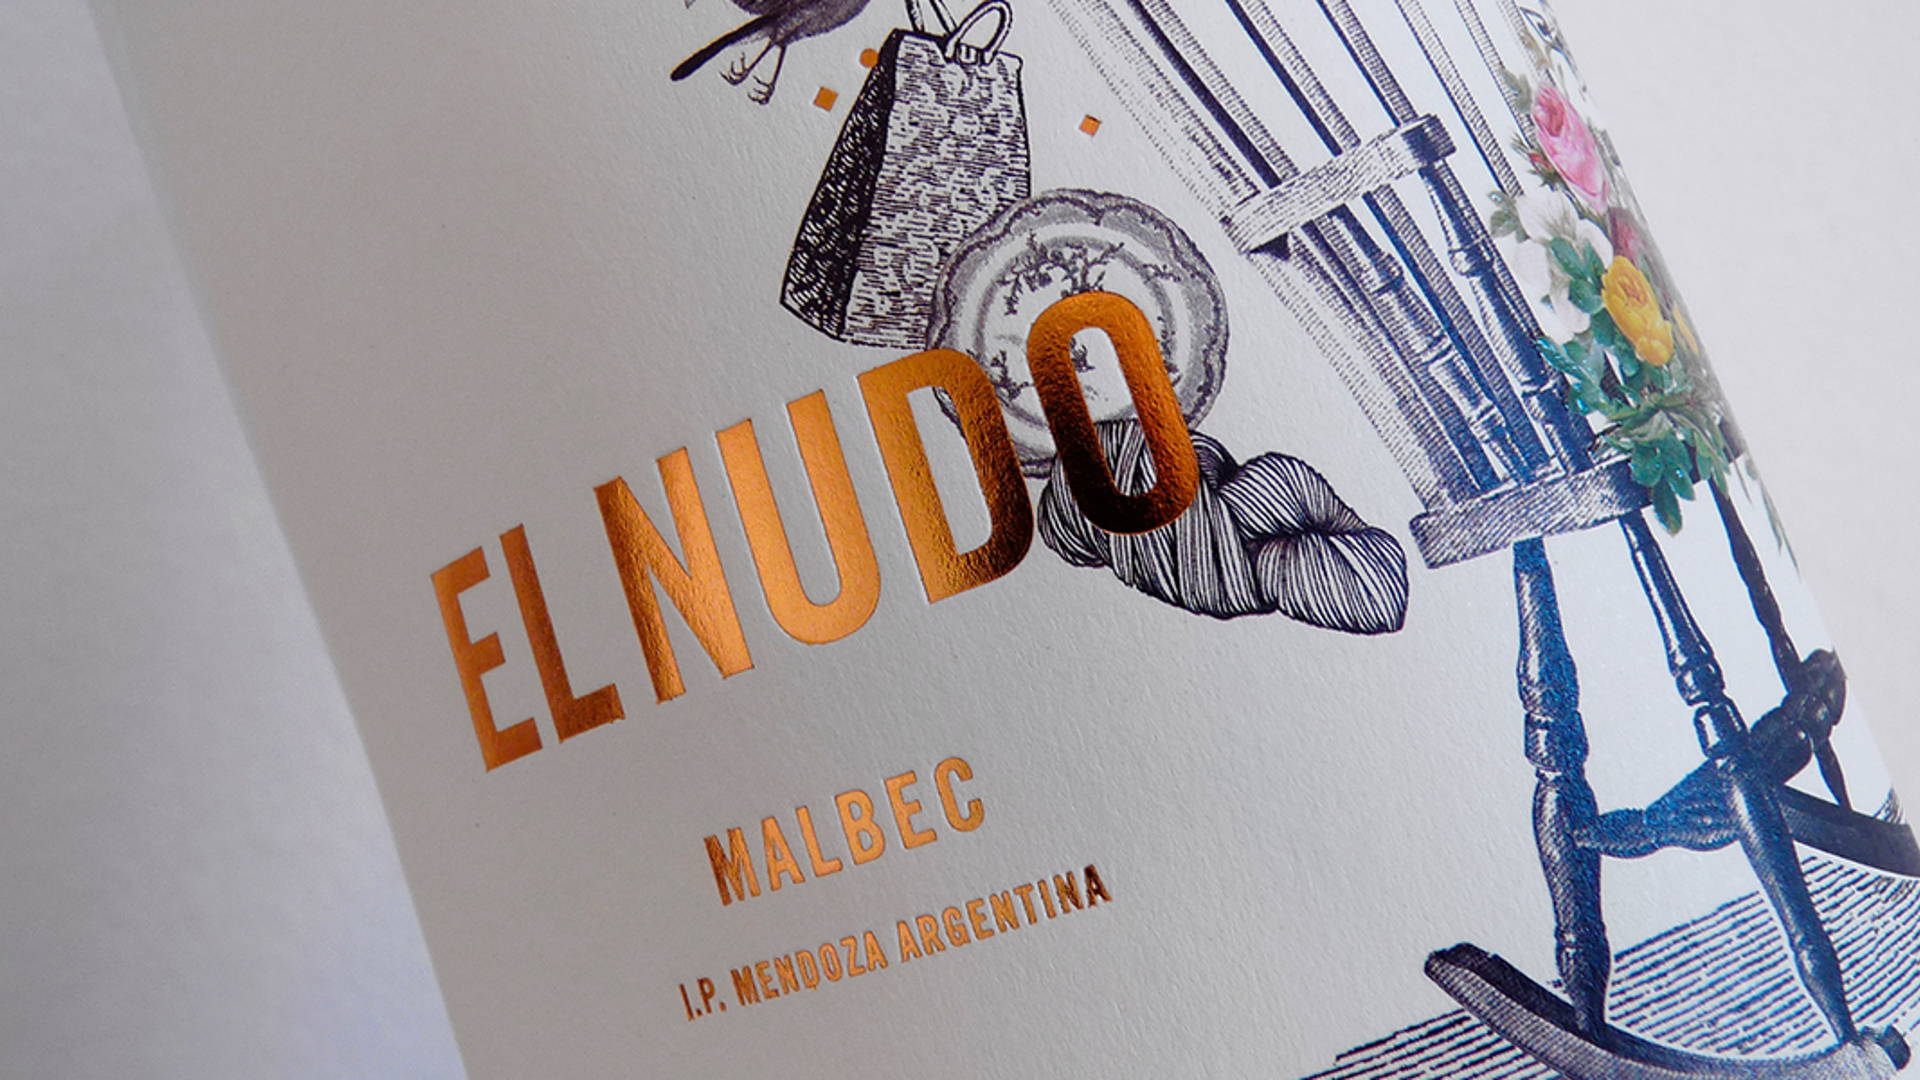 Featured image for El Nudo Malbec